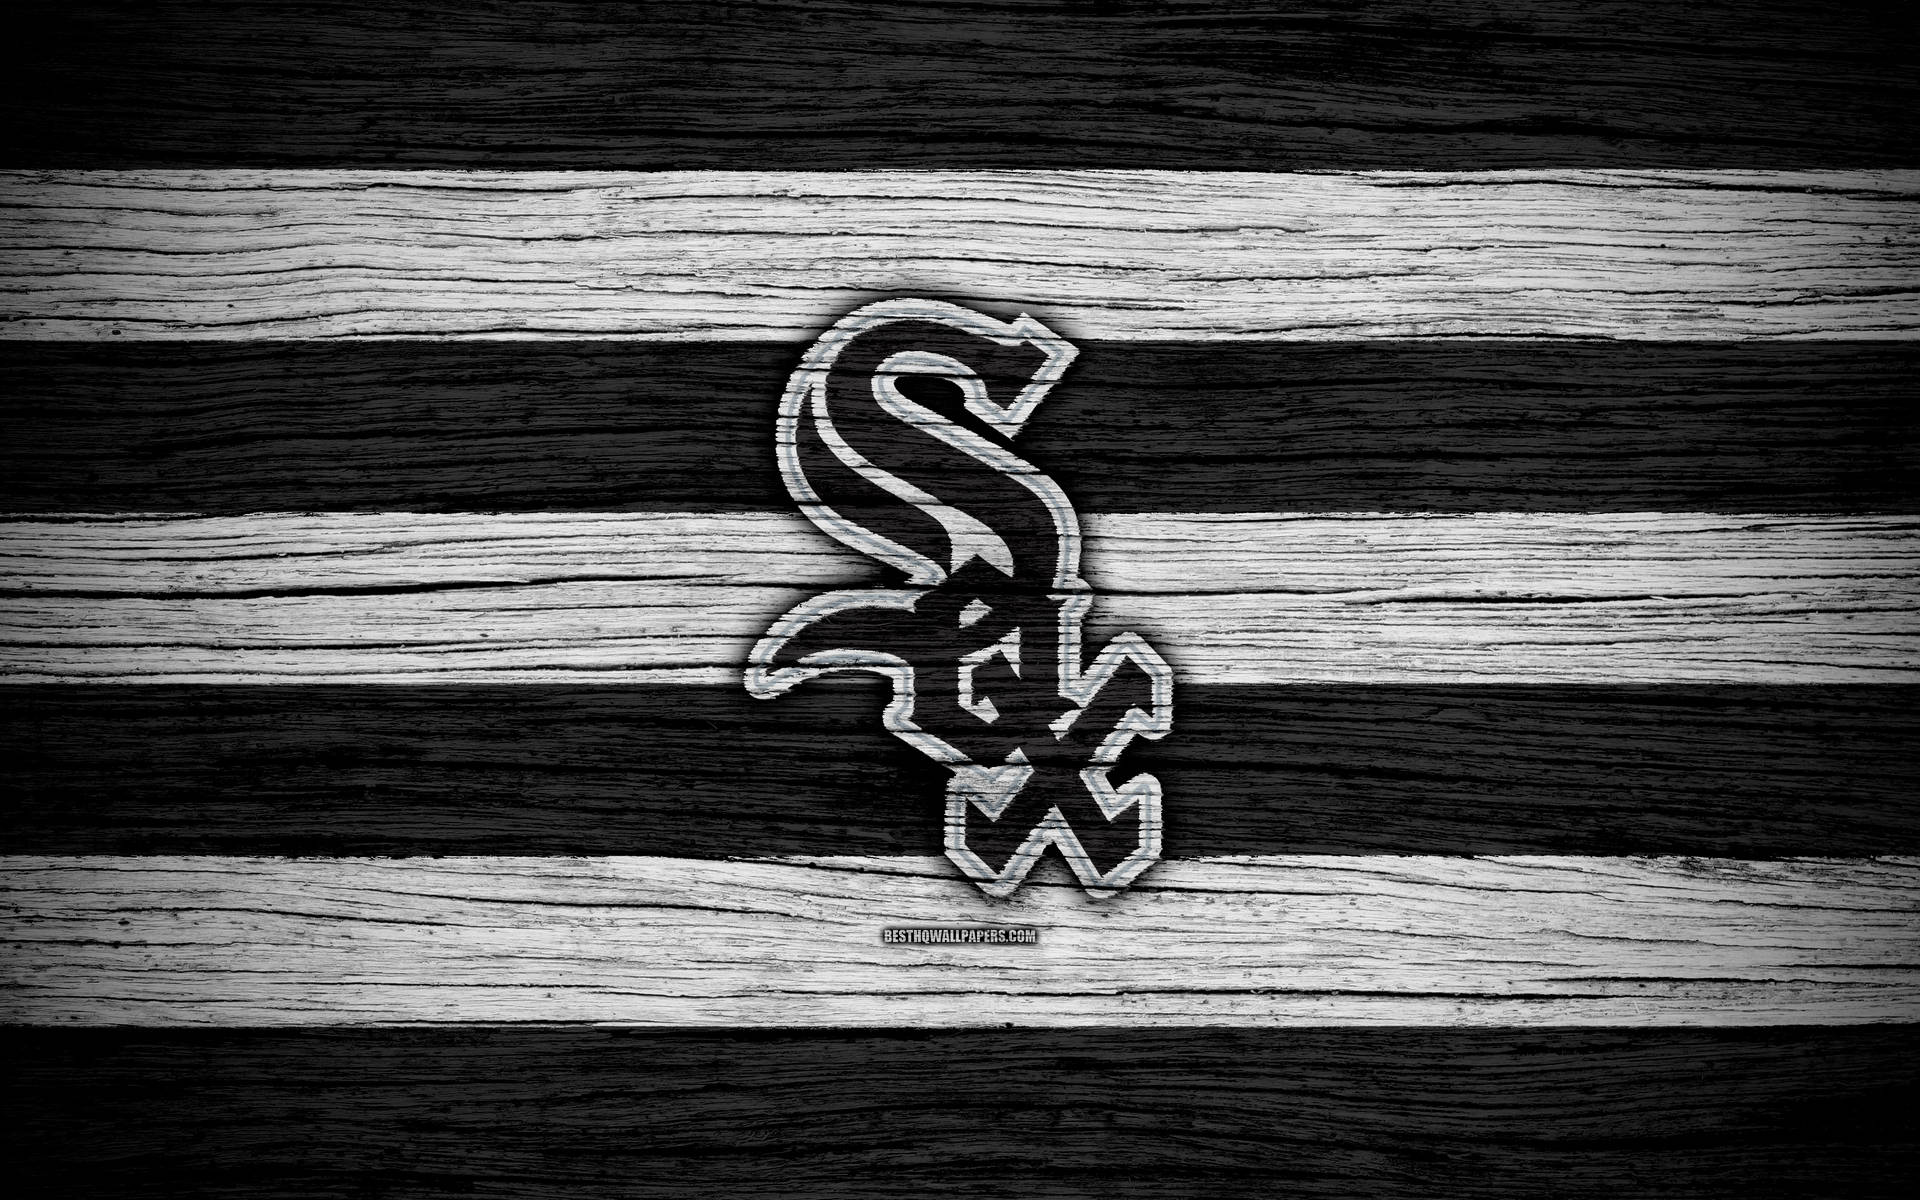 Chicago White Sox Logo On Wood